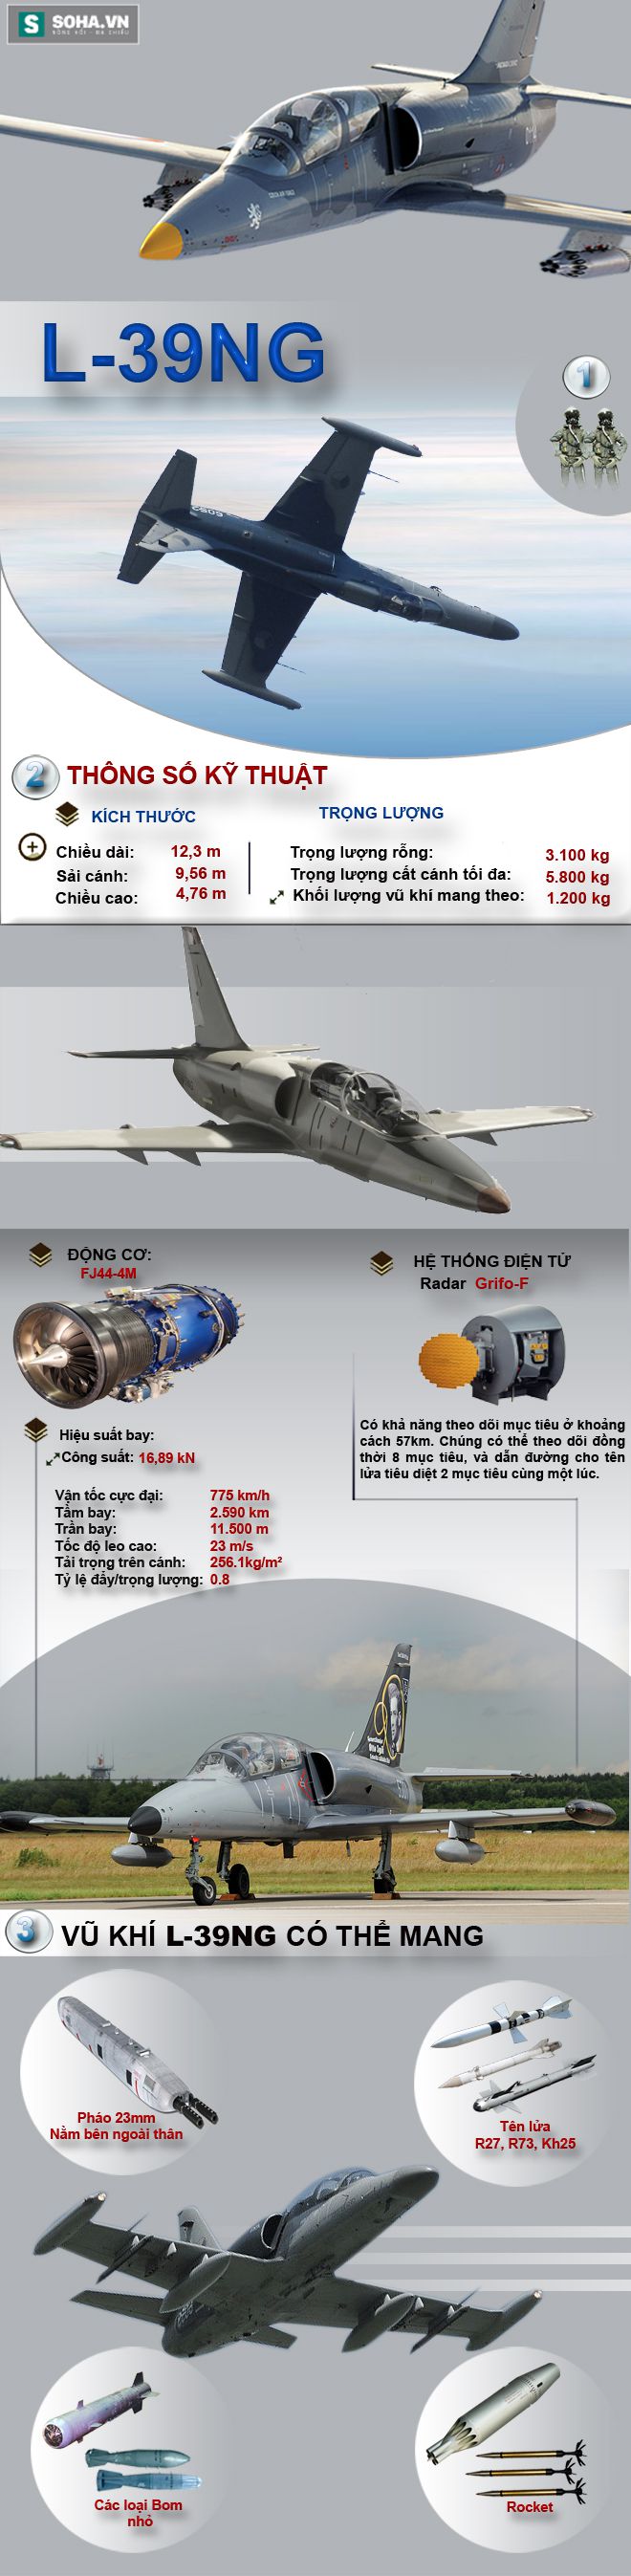 Đối thủ lớn nhất, có thể đánh bại Yak-130 tại thị trường Việt Nam - Ảnh 1.